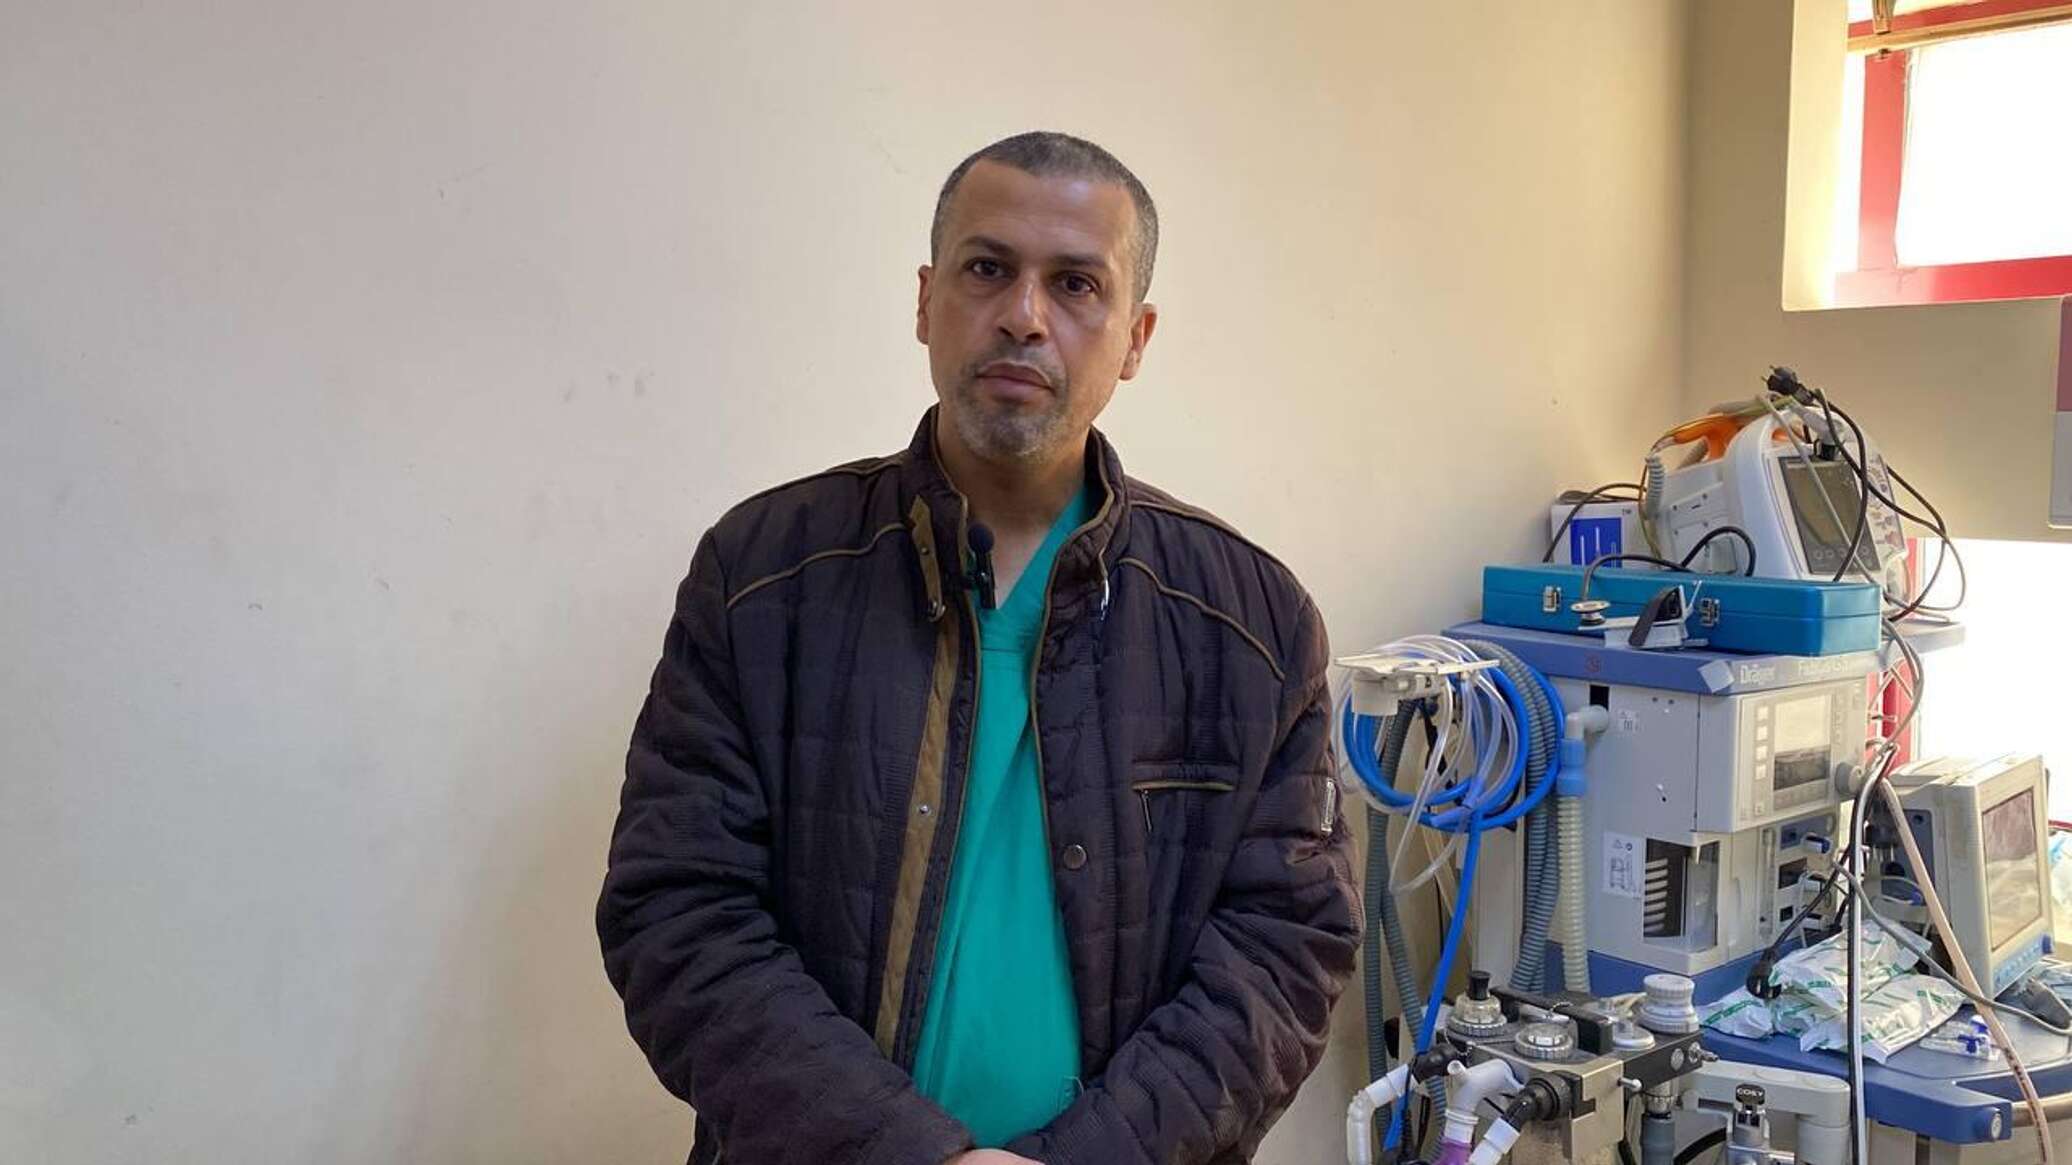 طبيب روسي يؤثر البقاء في قطاع غزة لعلاج الجرحى والتخفيف من آلامهم ويوجه نداء استغاثة